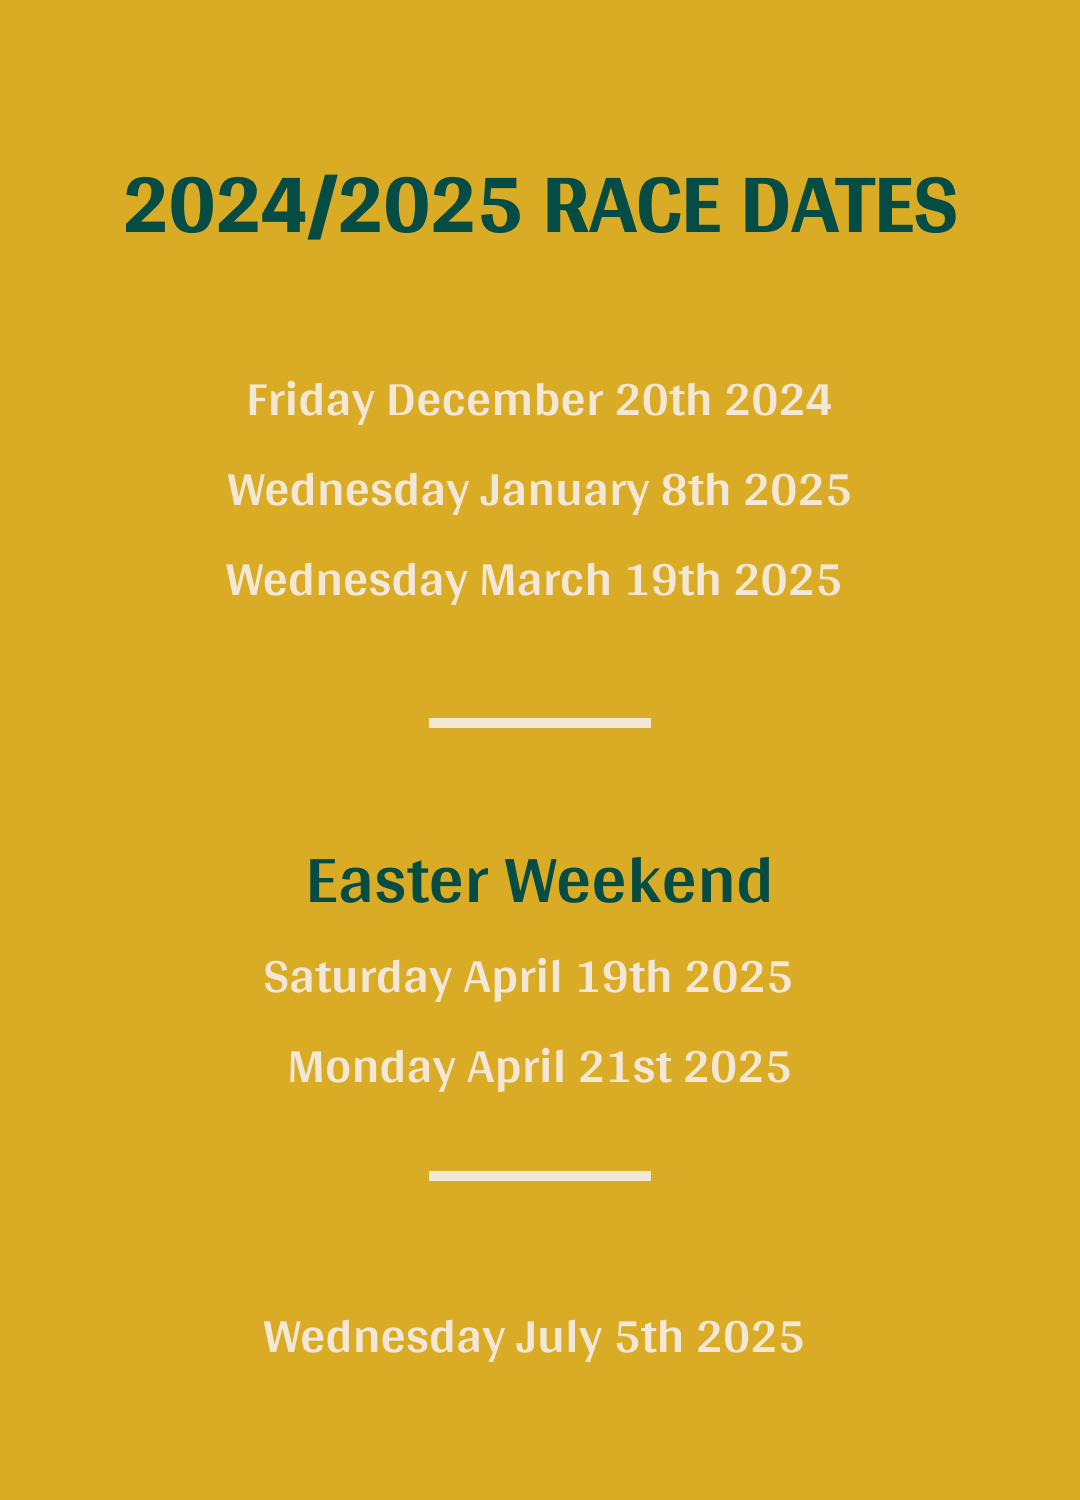 Racing Dates 24/25